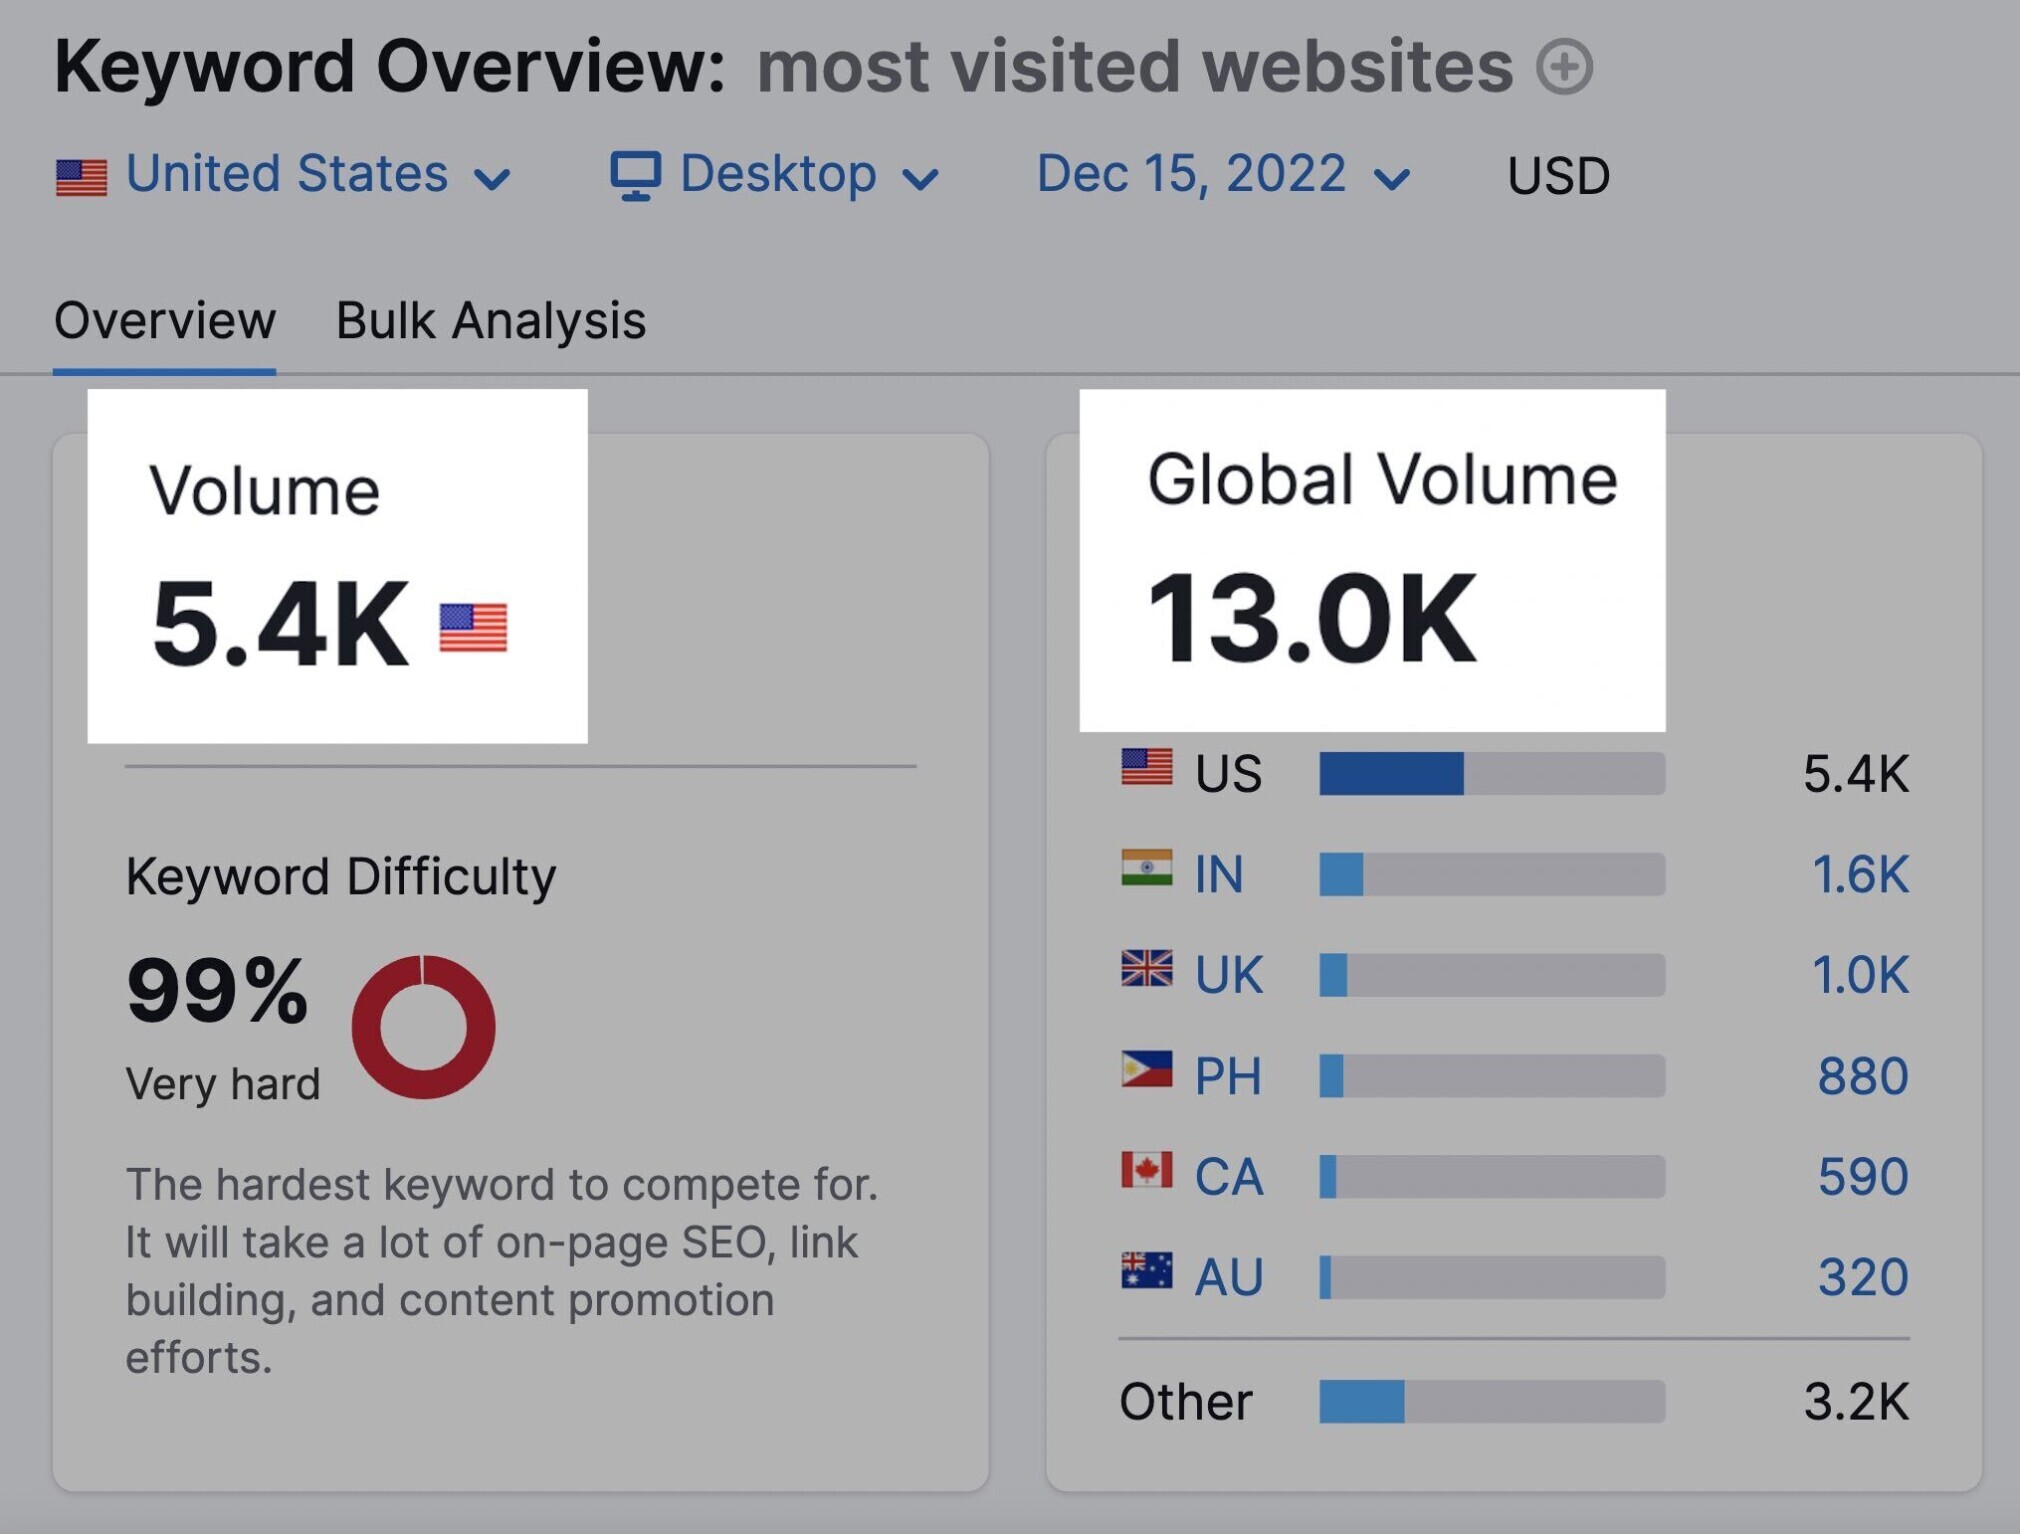 keyword overview most visited websites